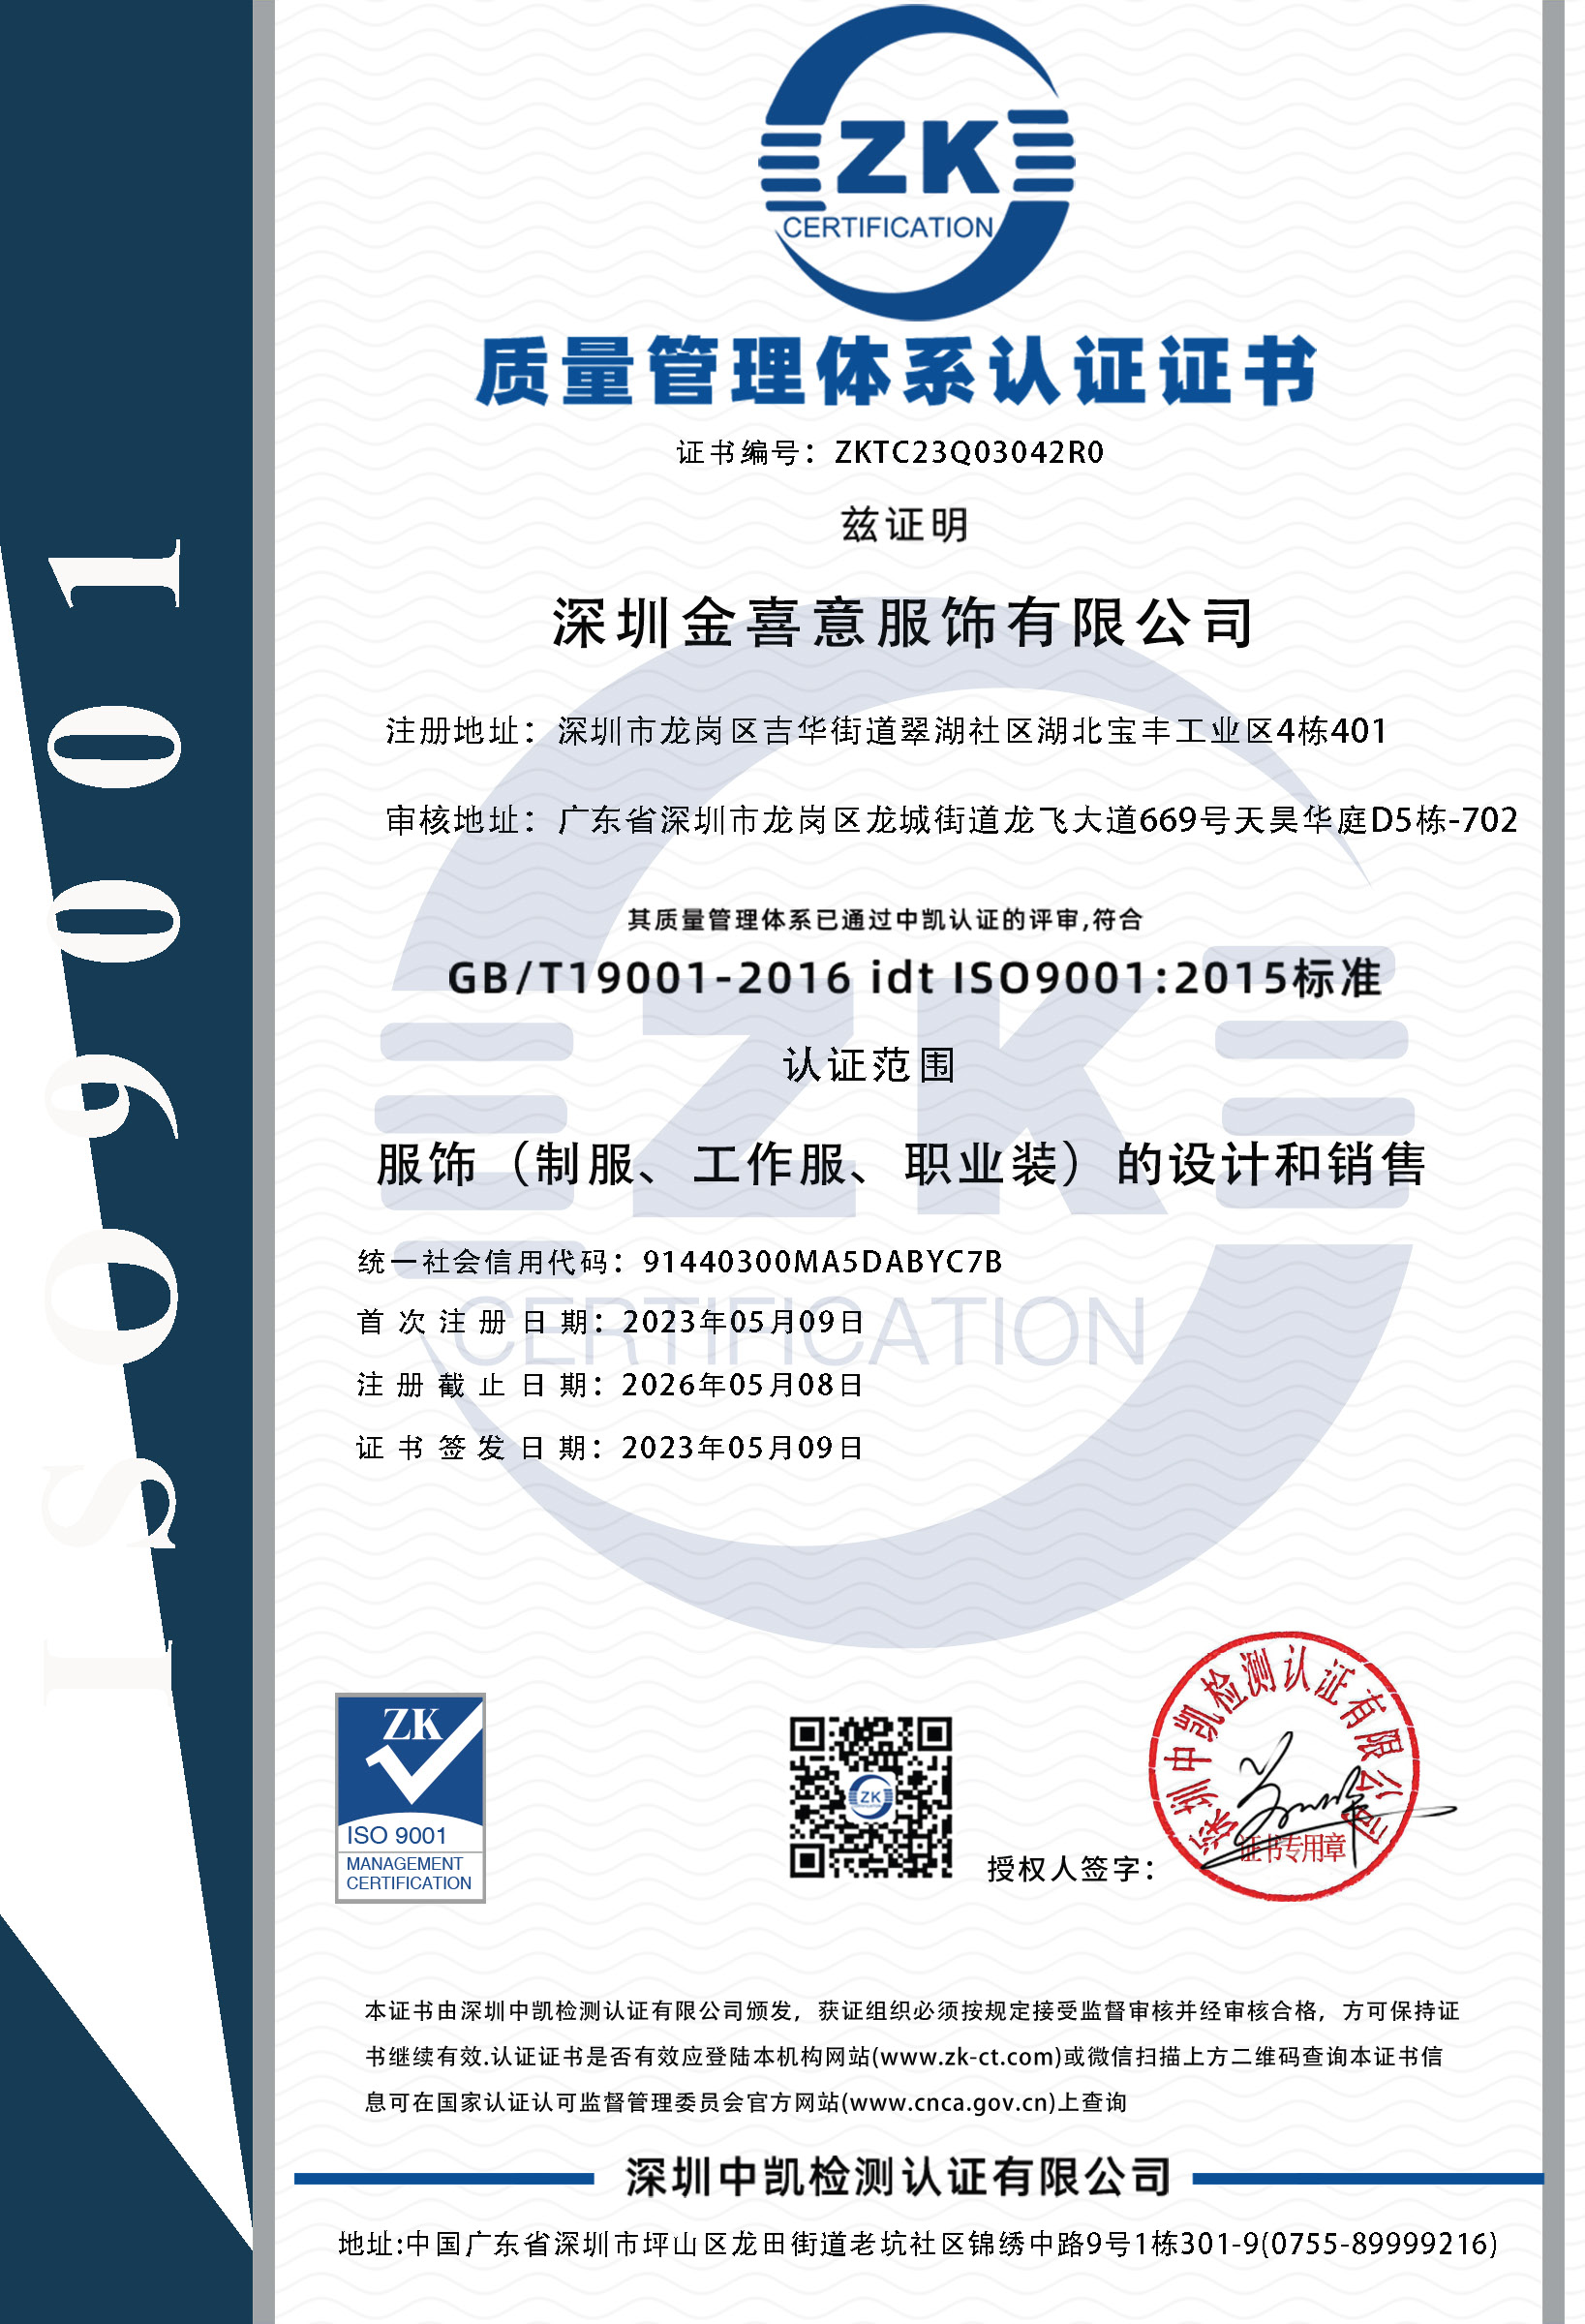 热烈祝贺我司再次顺利通过ISO三体系认证并取得证书